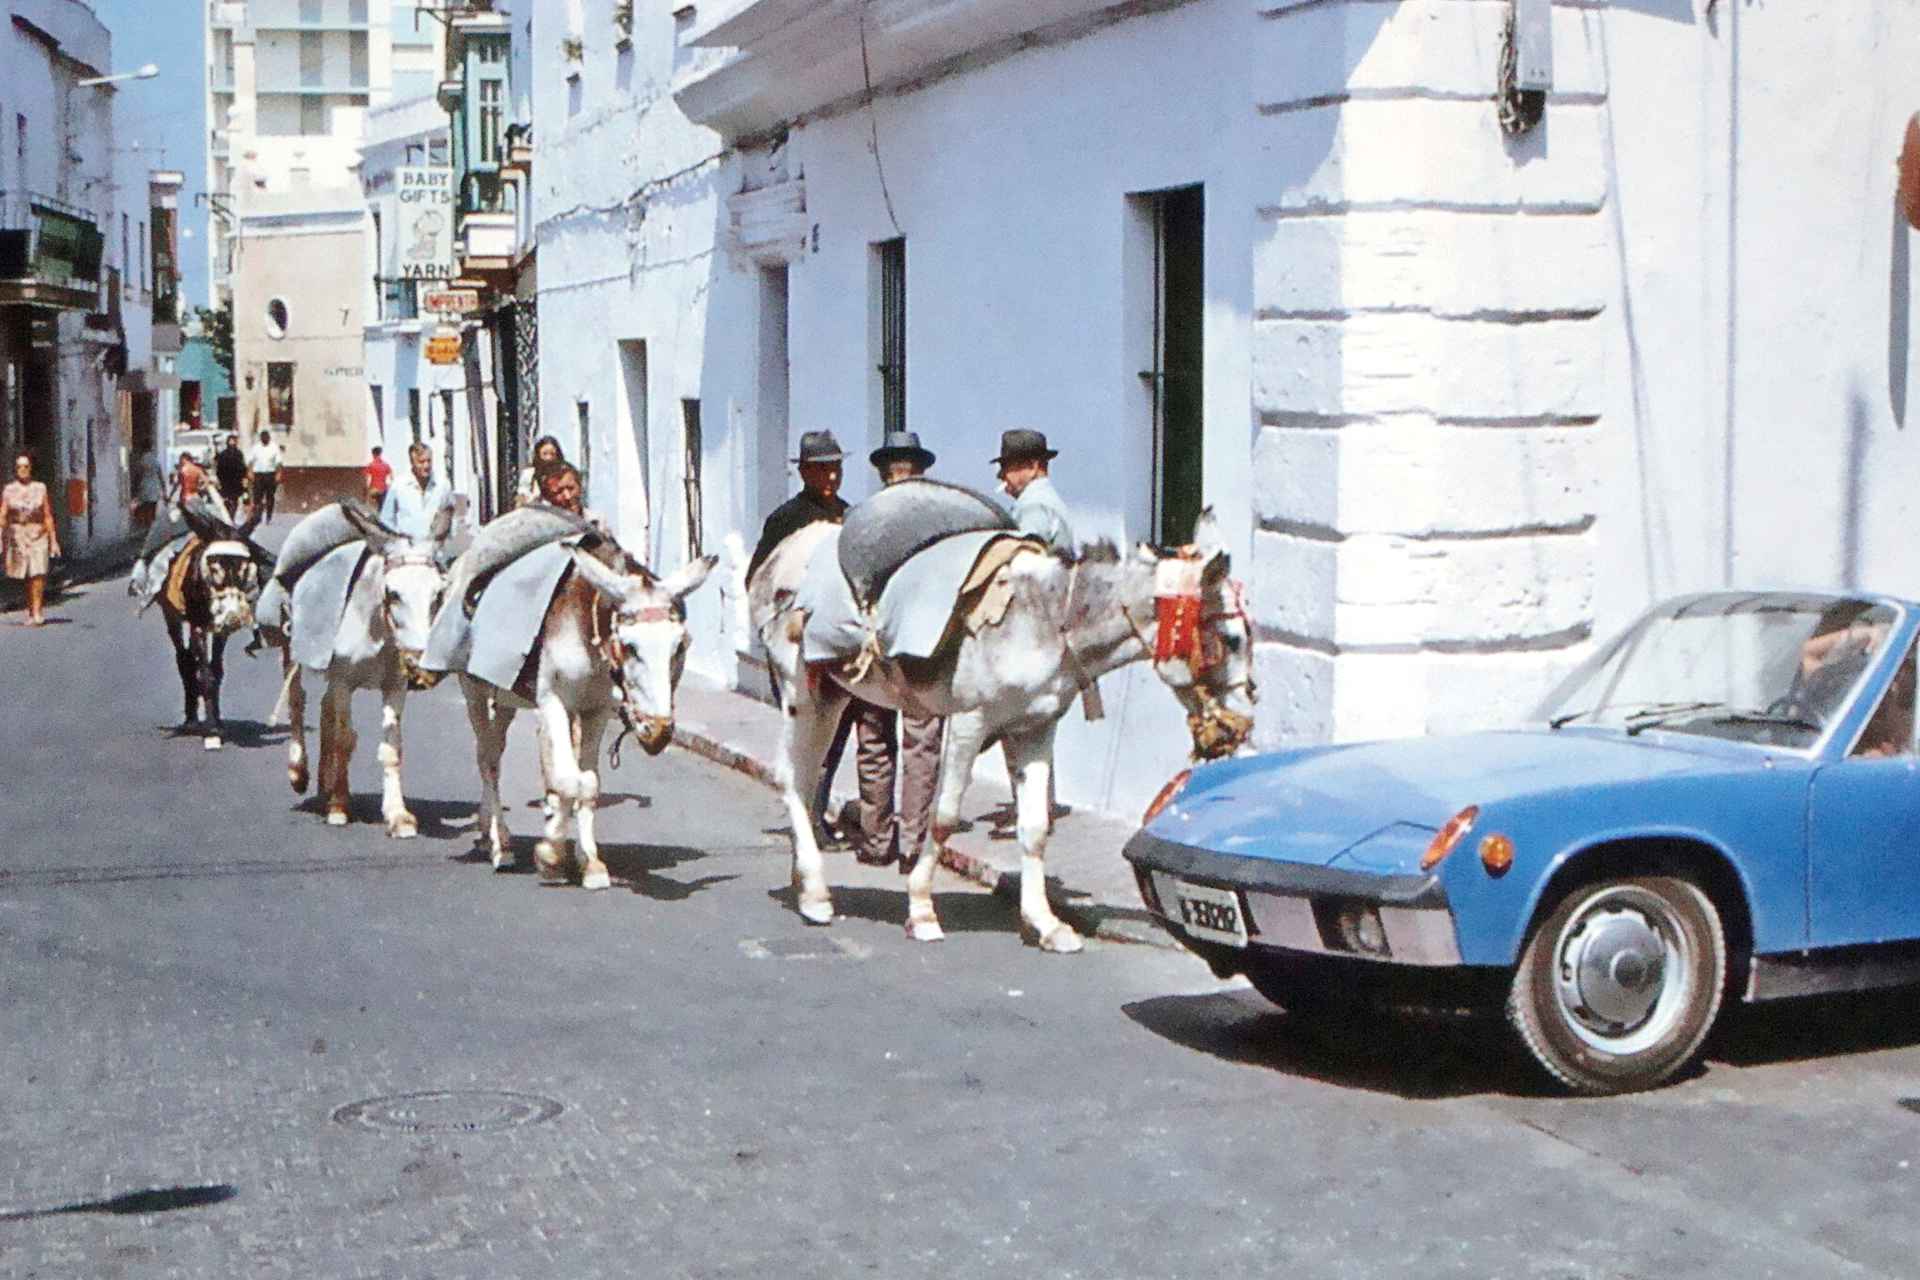 Una de las imágenes que ofrece 'Rota n' Roll', cuando en la localidad se mezclaban los burros y los grandes coches americanos por sus calles.